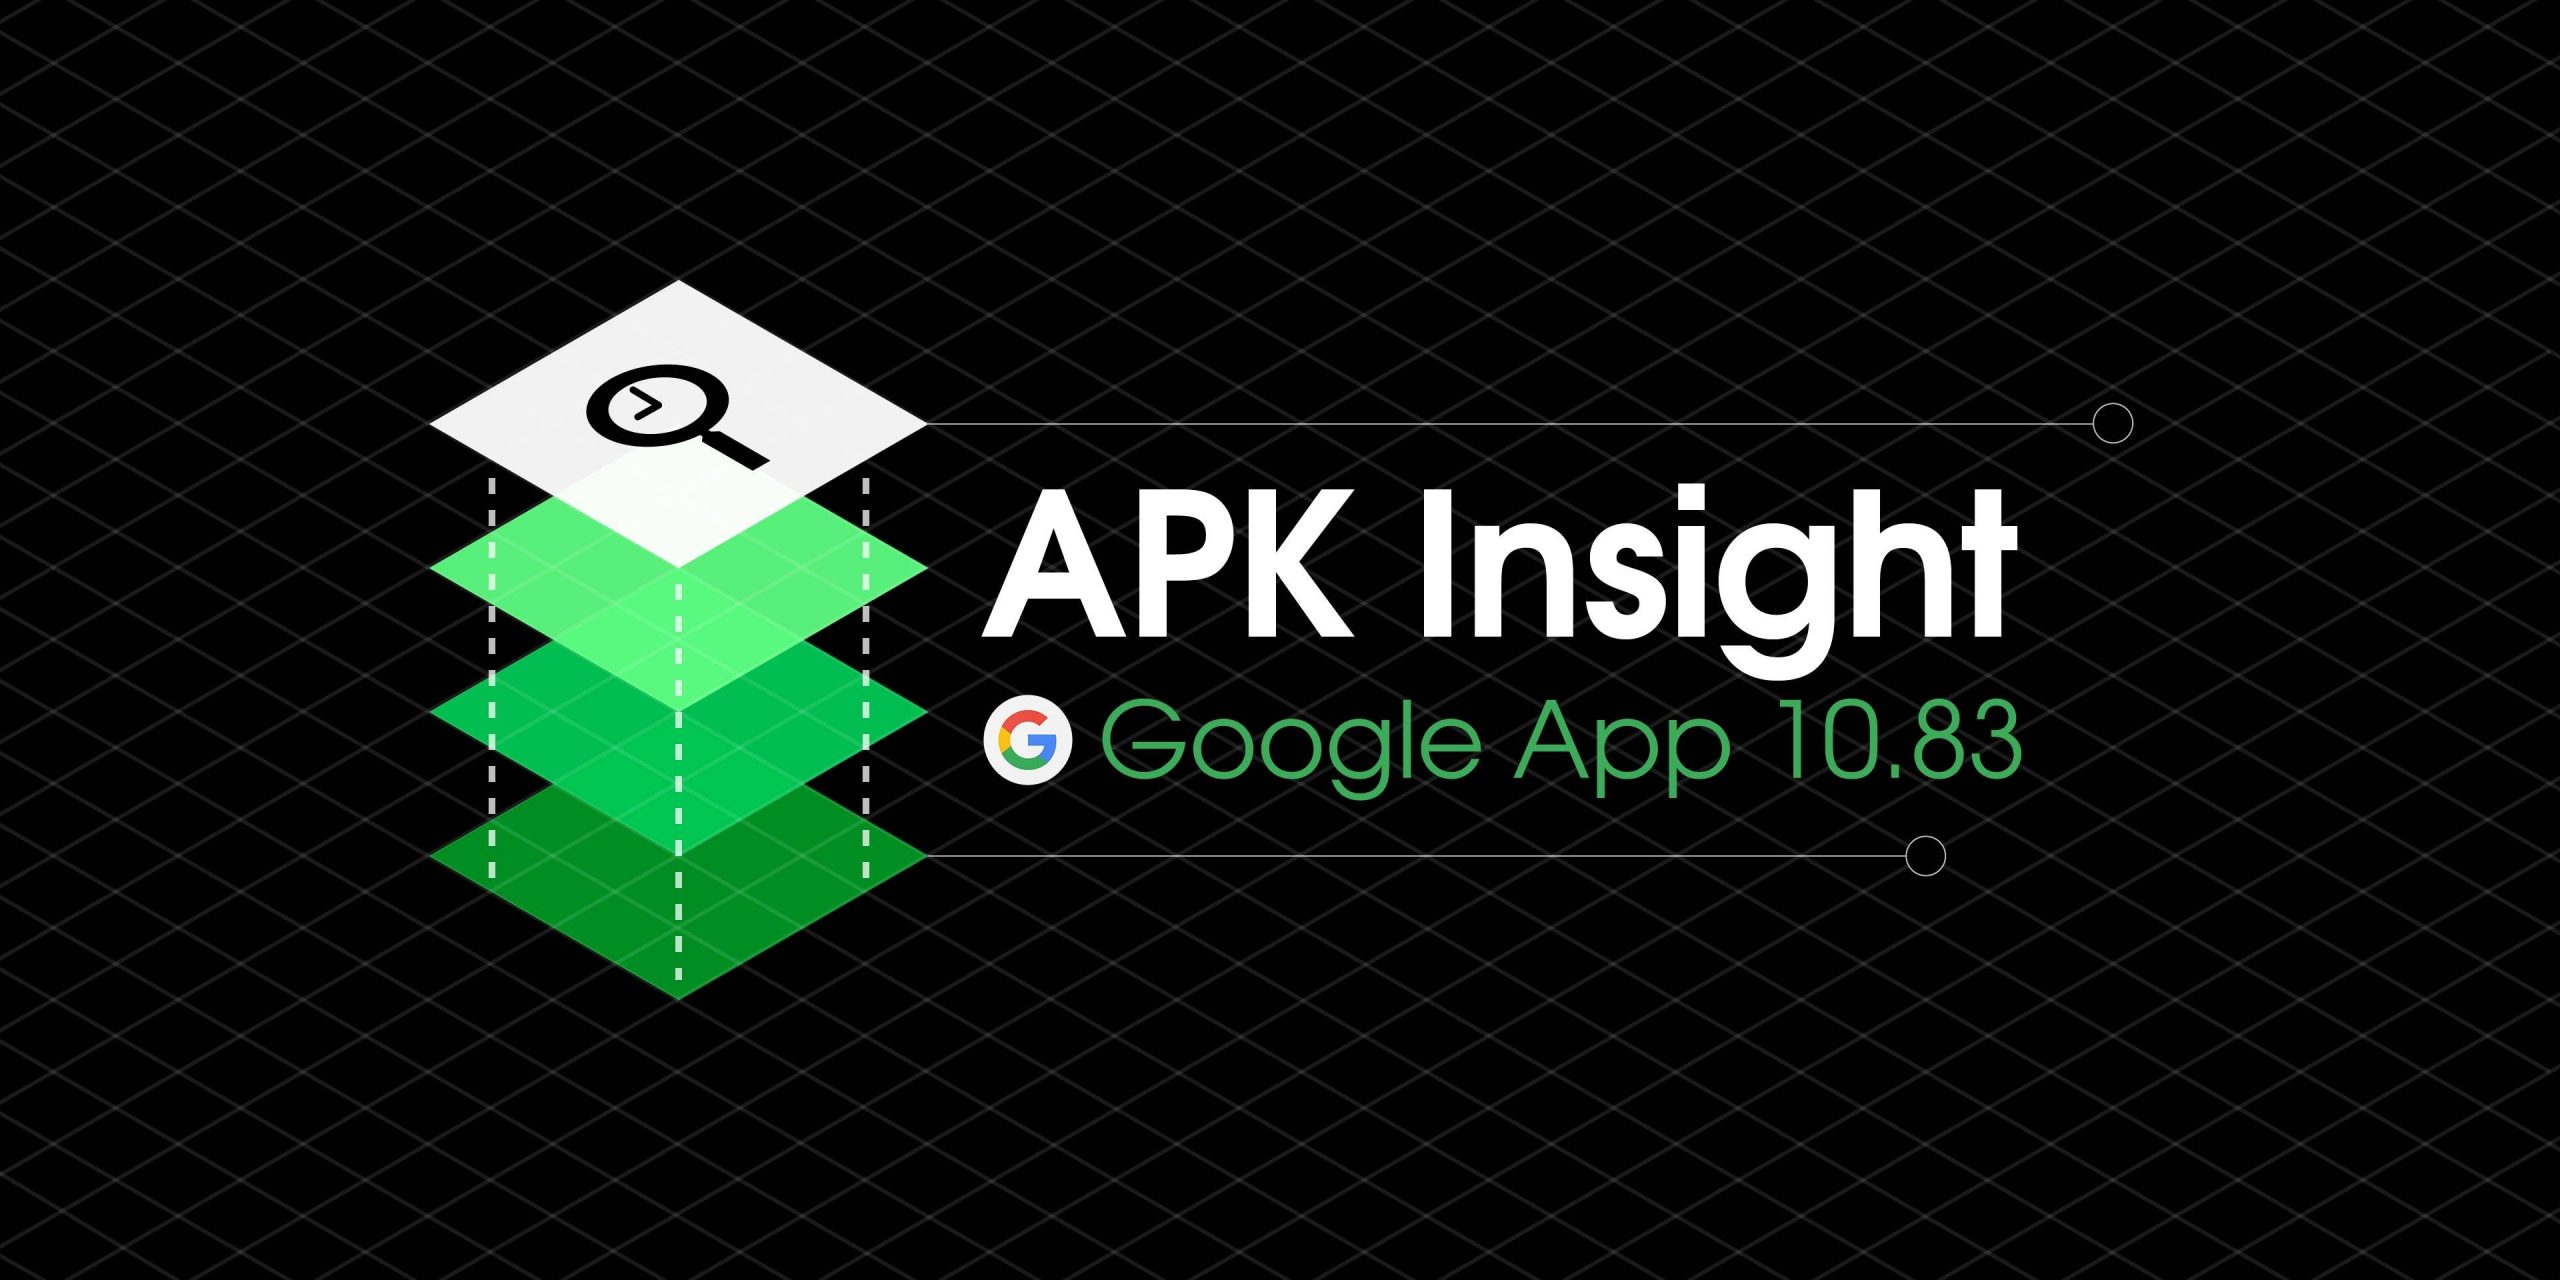 Google app 10.83 prepara navegador no aplicativo, Voice Match for Assistant headphones [APK Insight]